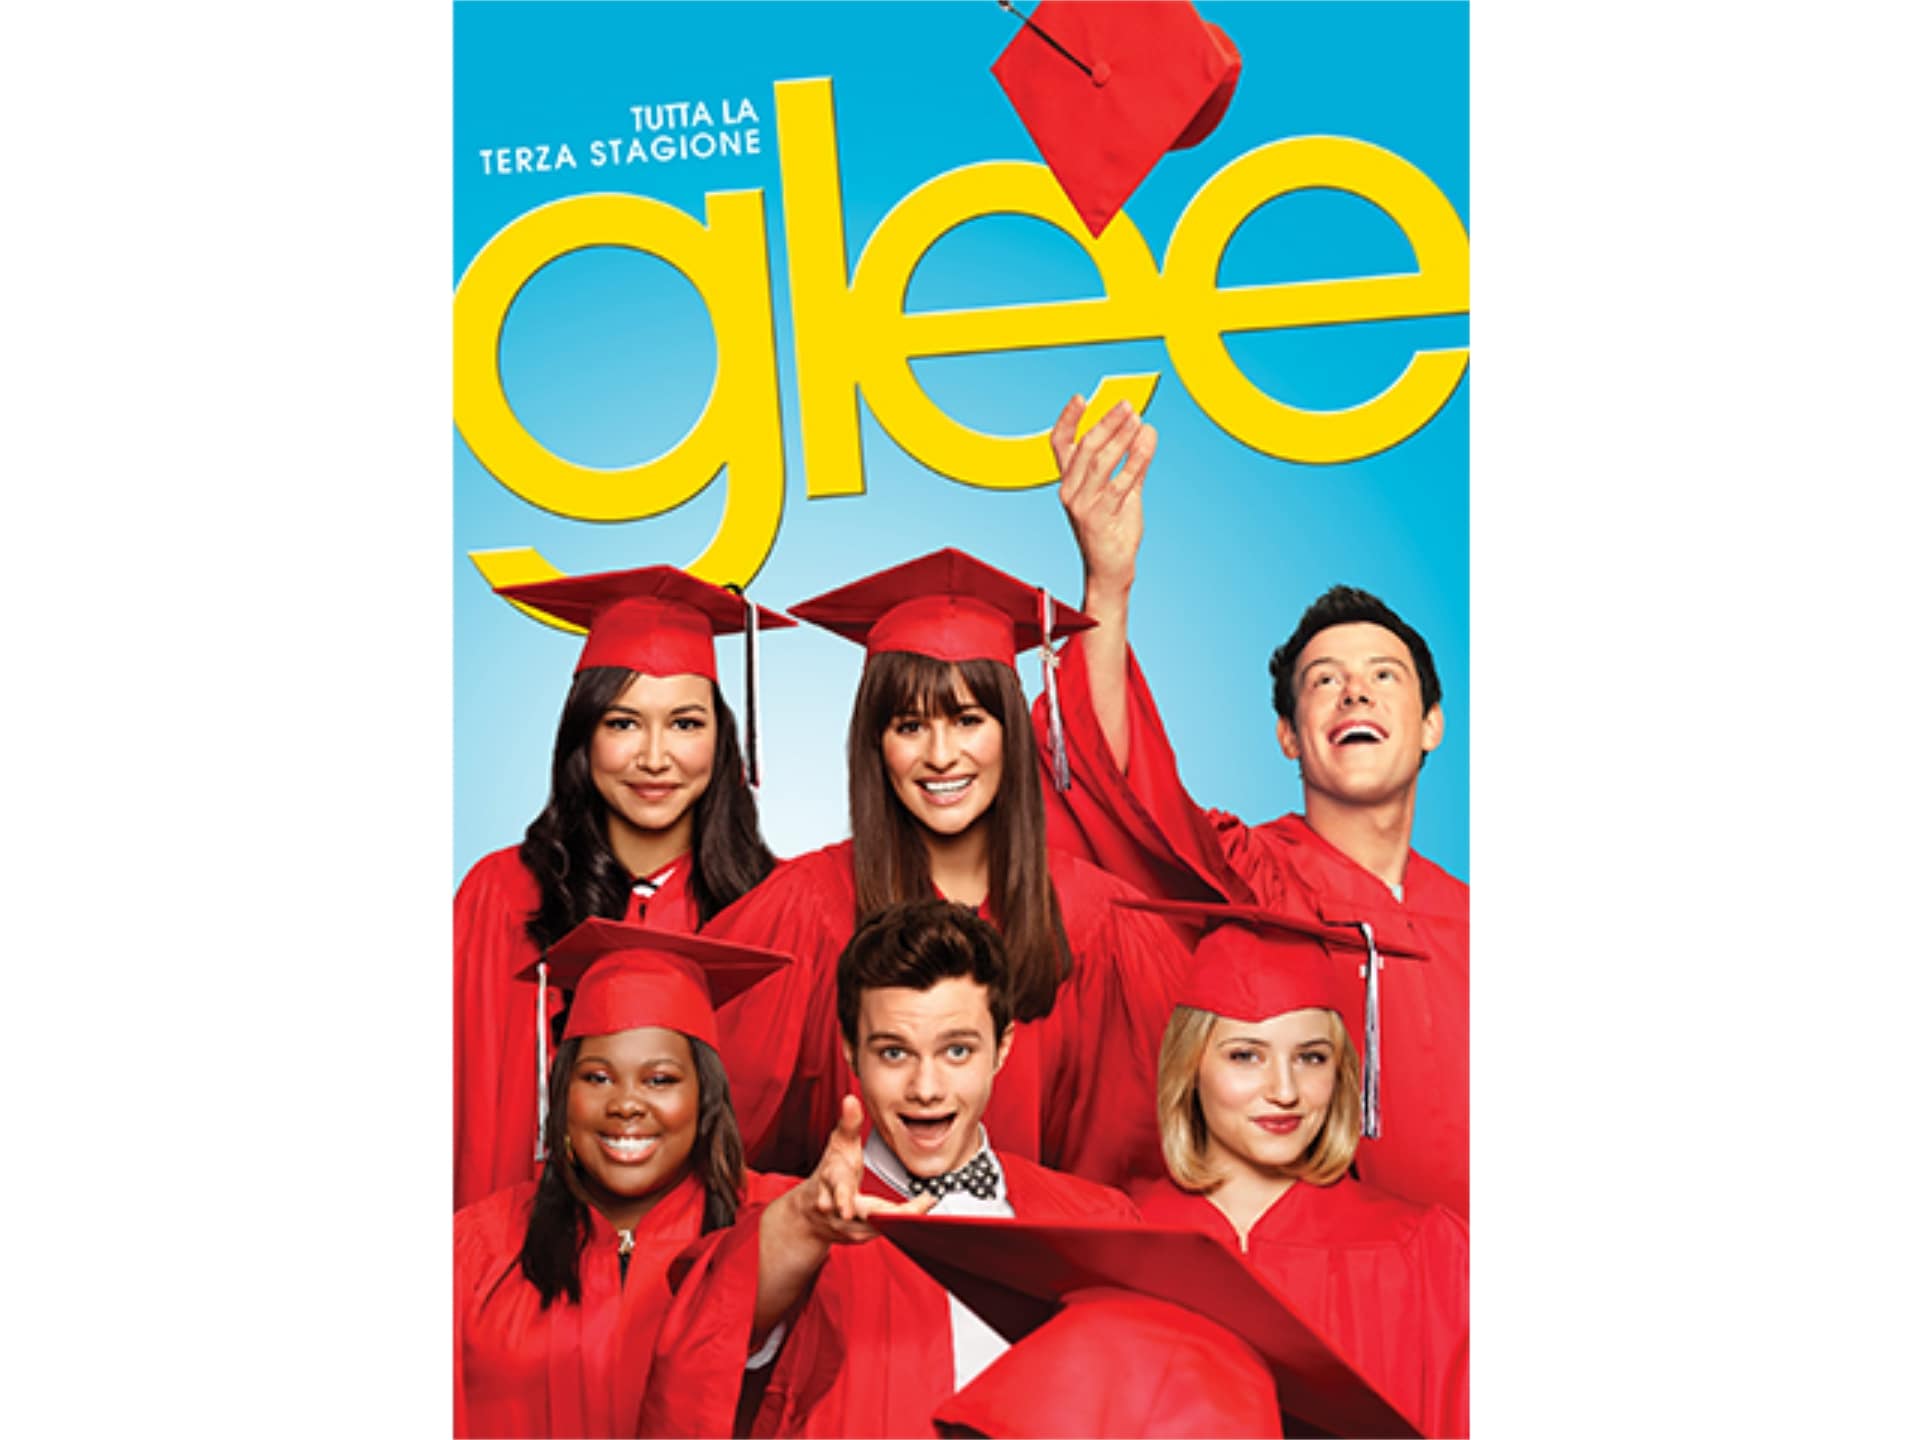 Glee グリー シーズン3 第1話 第22話のまとめフル動画 初月無料 動画配信サービスのビデオマーケット